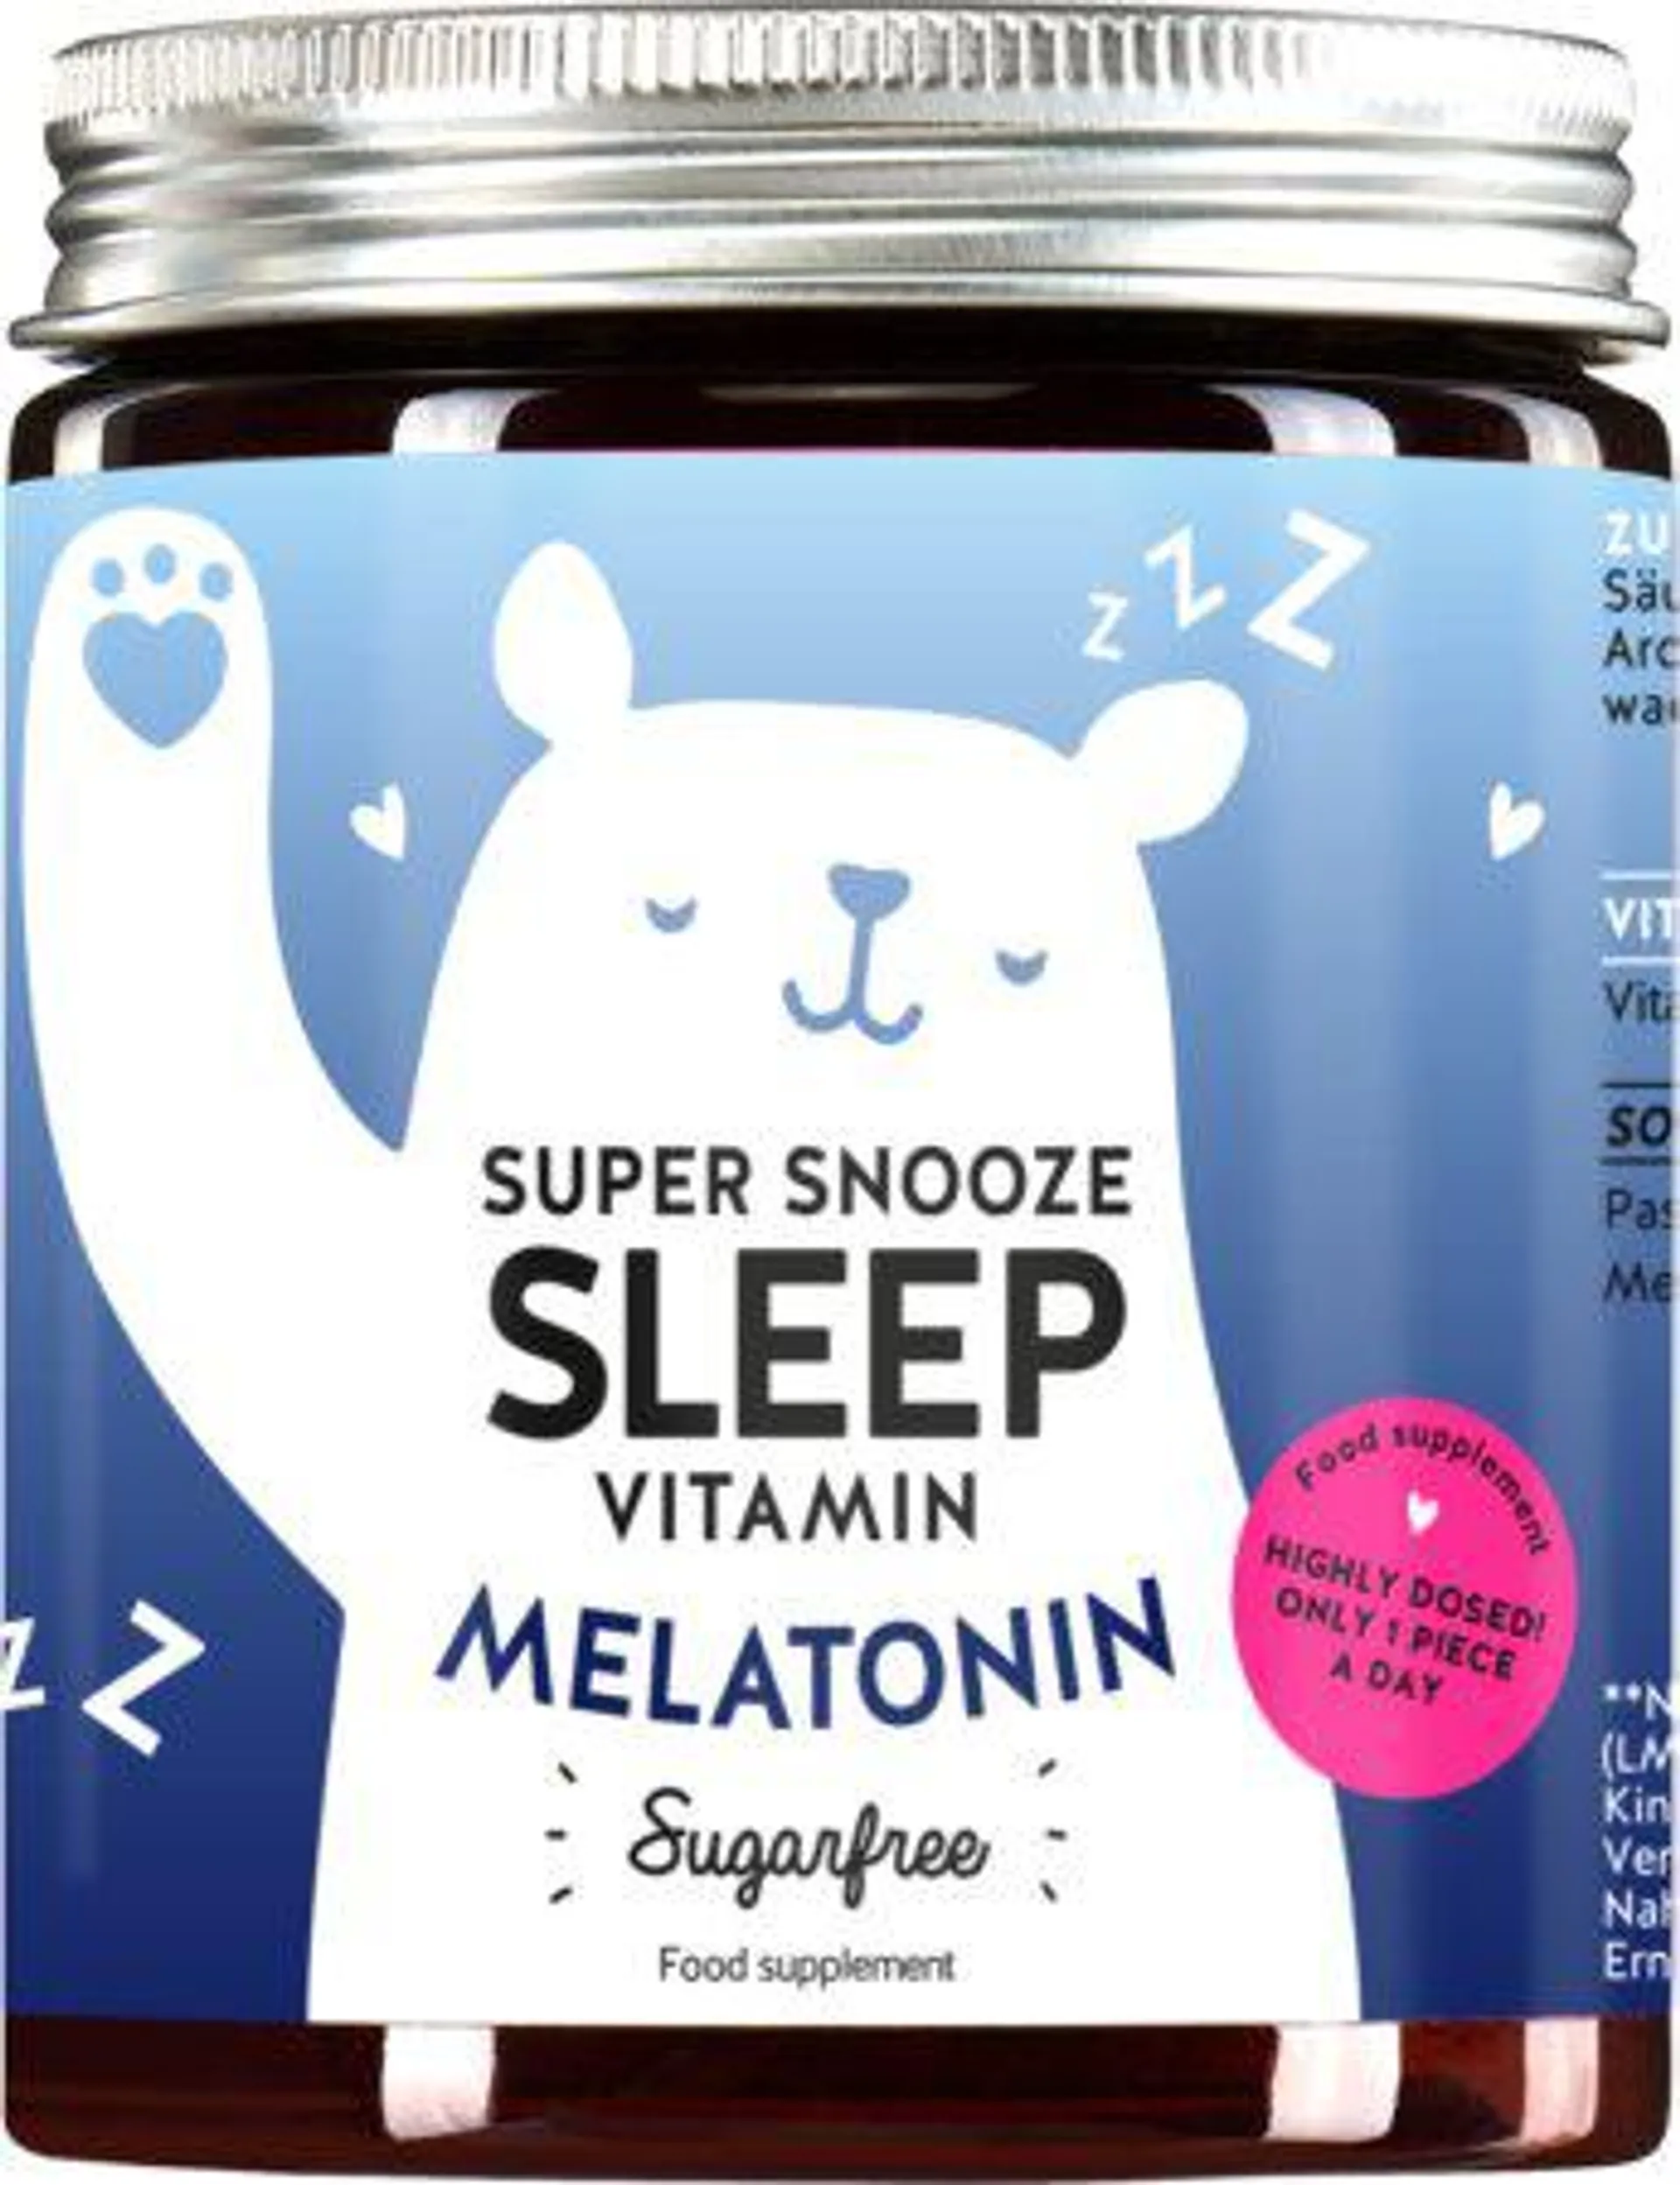 Super snooze sleep vitamin